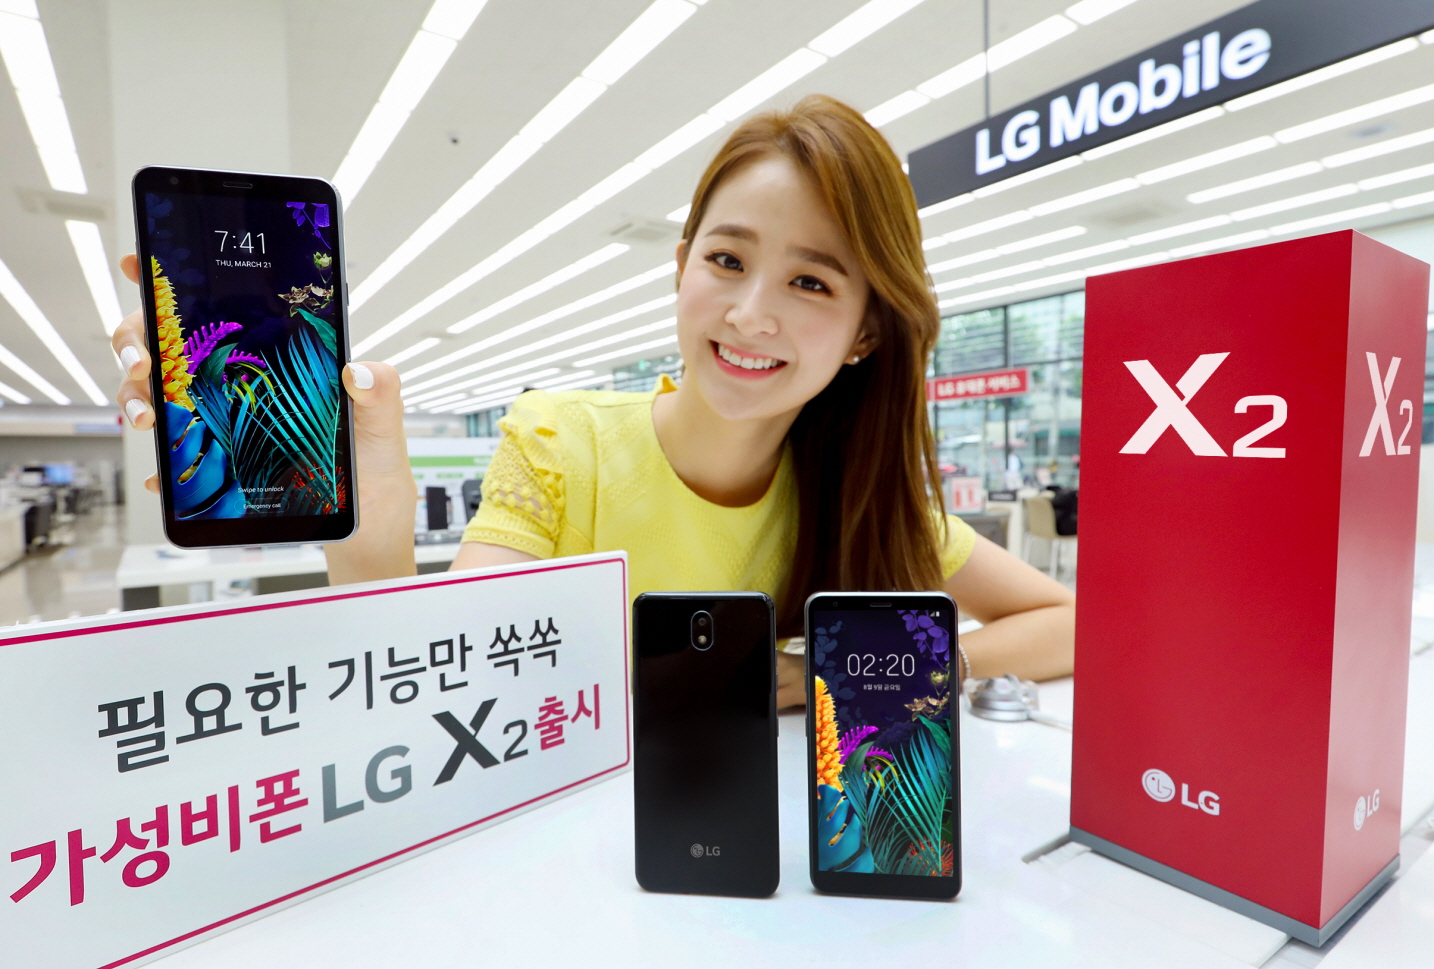 LG전자가 오는 9일 이통3사와 자급제 채널을 통해 실속형 스마트폰 LG X2를 국내 출시한다. 출고가는 19만 8천 원. LG전자 모델이 서울 영등포구 소재 LG베스트샵 양평점에 위치한 모바일 코너에서 LG X2를 소개하고 있다.